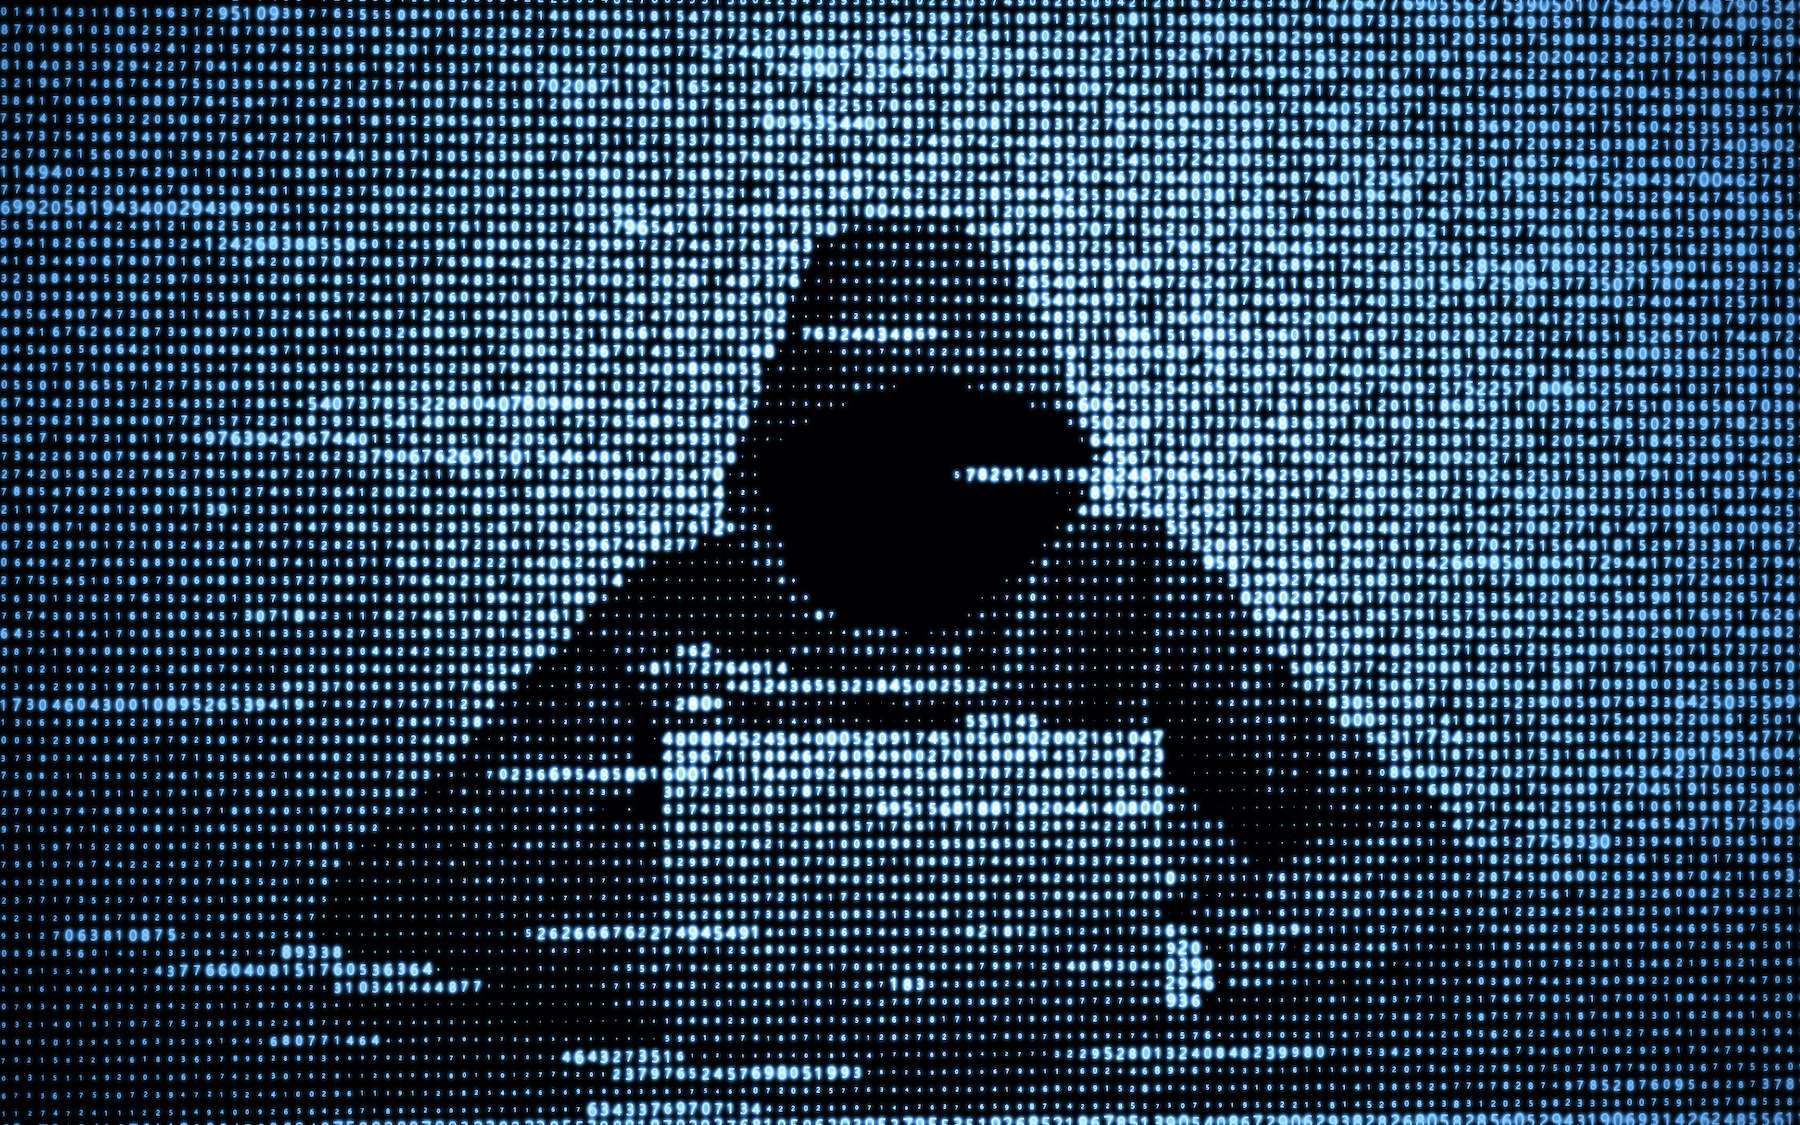 Cyberattaque en Entreprise : 5 Erreurs à Éviter Absolument